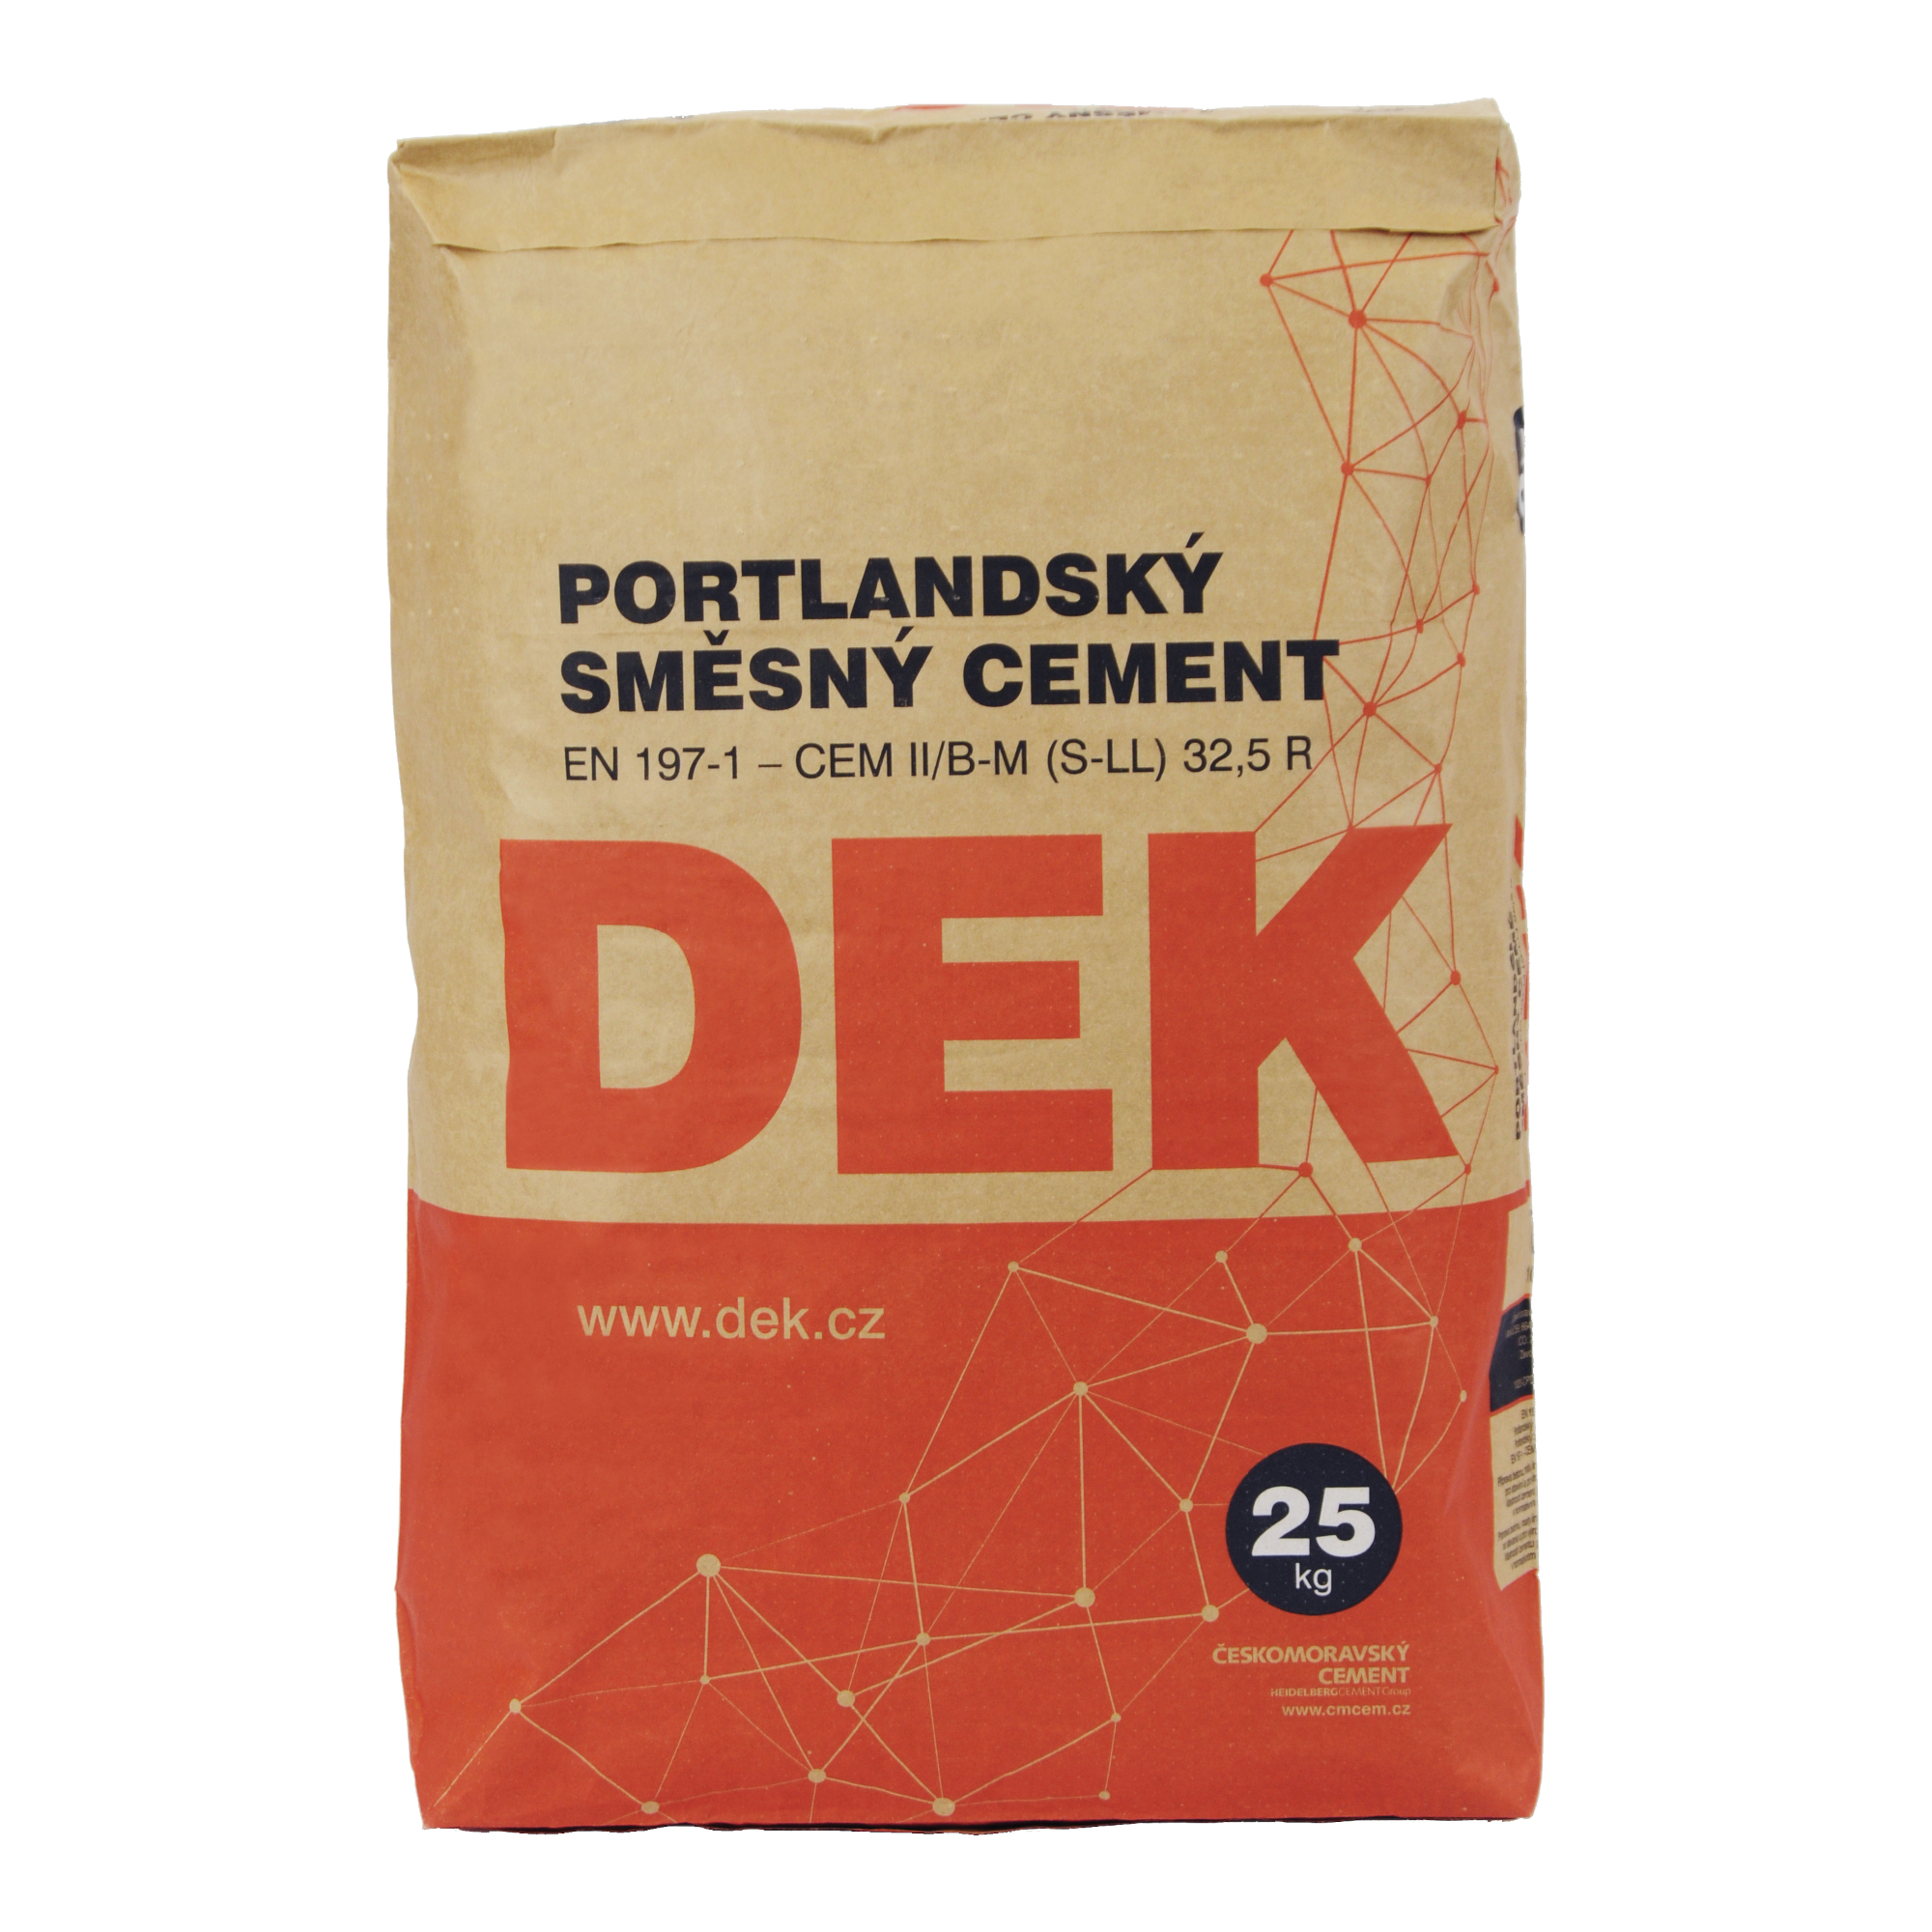 Cement portlandský směsný Českomoravský cement CEM II/B-M(V-LL) 32